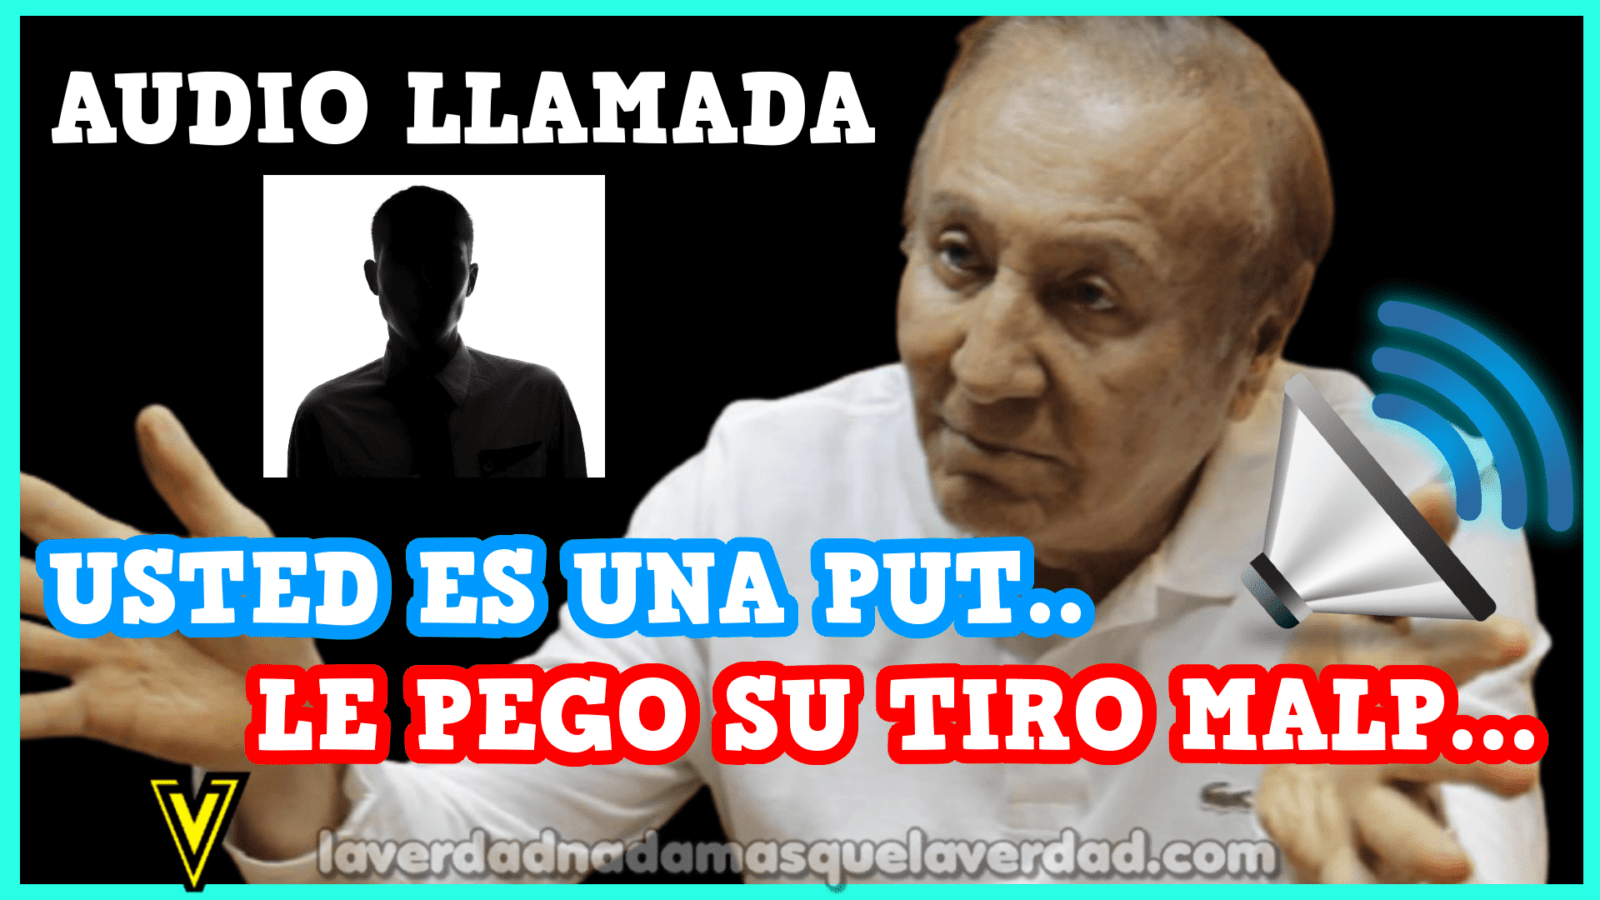 “Le pego su tiro”: se filtra acalorada conversación del candidato presidencial Rodolfo Hernández